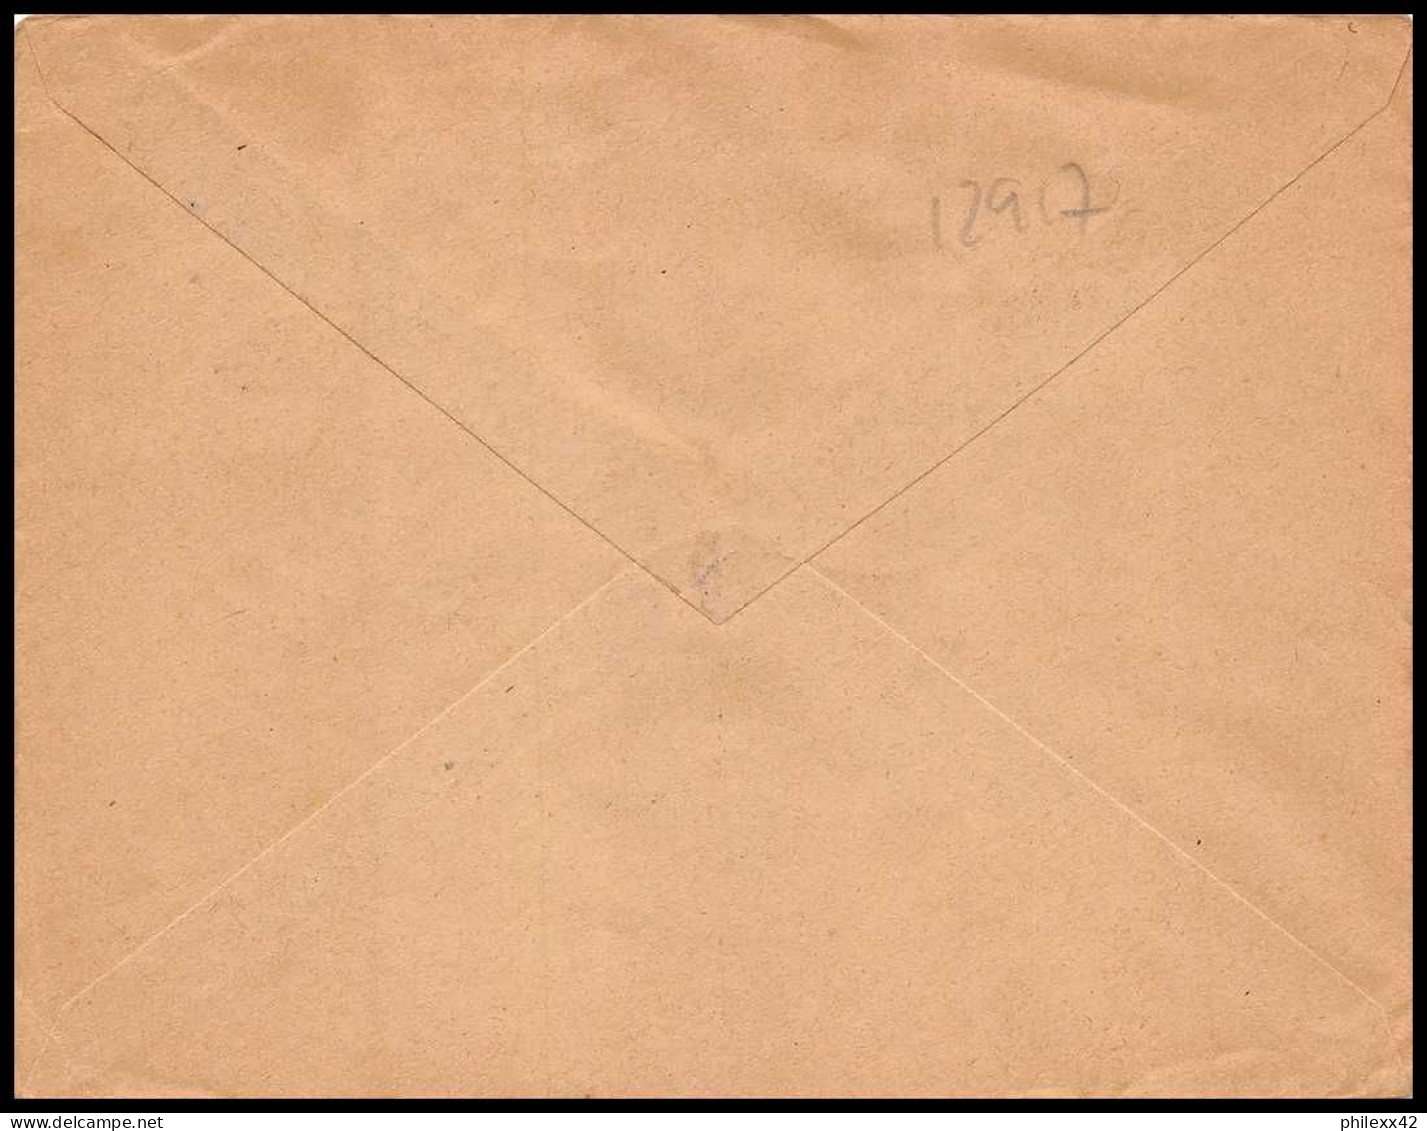 12917 N°303 Journée Du Timbre 1955 Fdc Premier Jour Algérie Lettre Cover - Cartas & Documentos